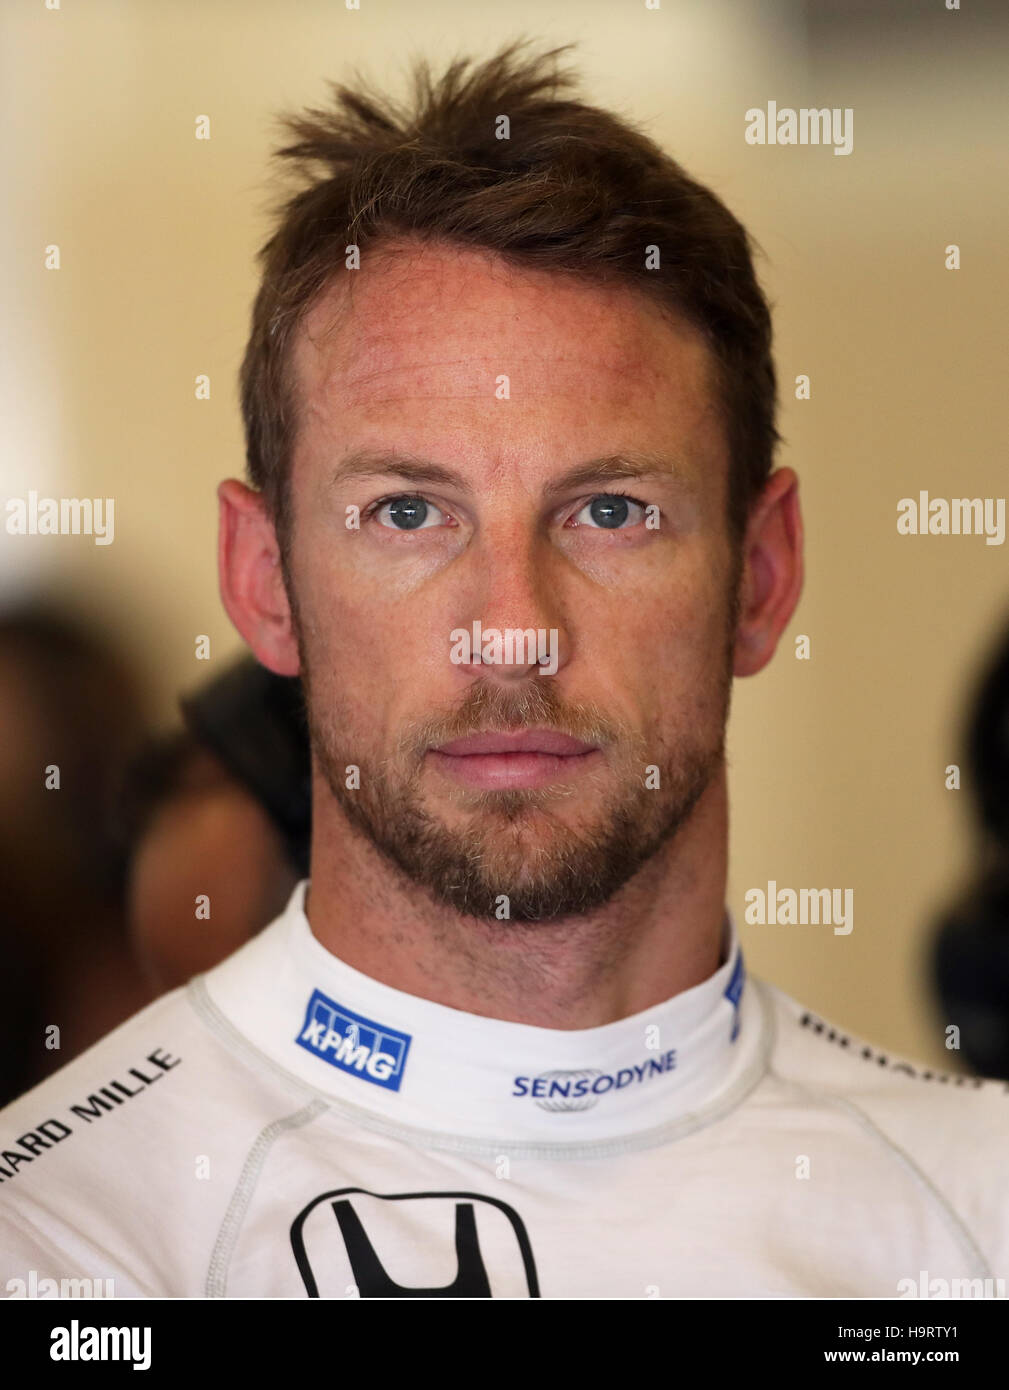 McLaren's Jenson Button during practice at Yas Marina Circuit, Abu ...